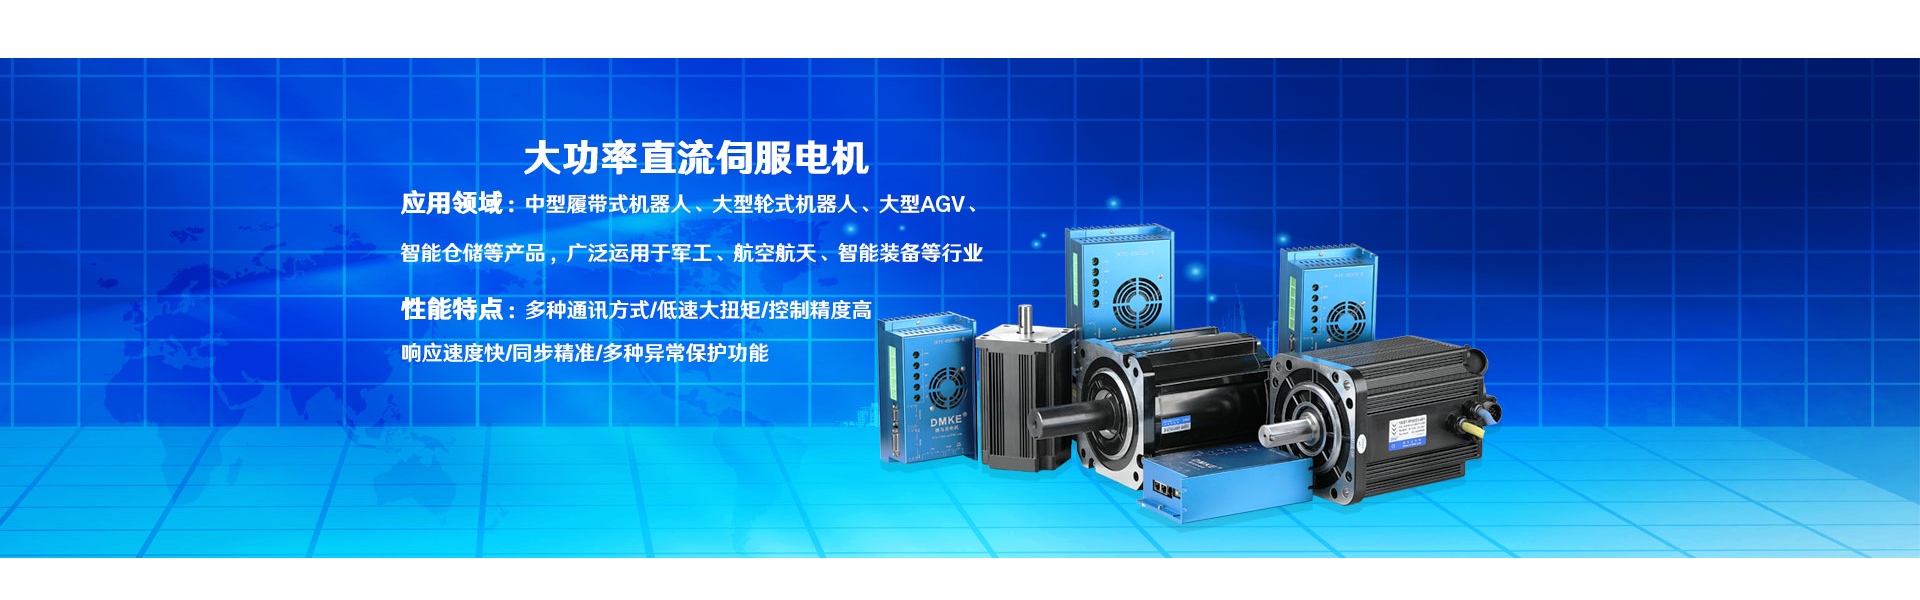 мотор, двигатель постоянного тока, бесщеточный двигатель постоянного тока,Dongguan Joy Machinery Manufacturing Co.,Ltd.